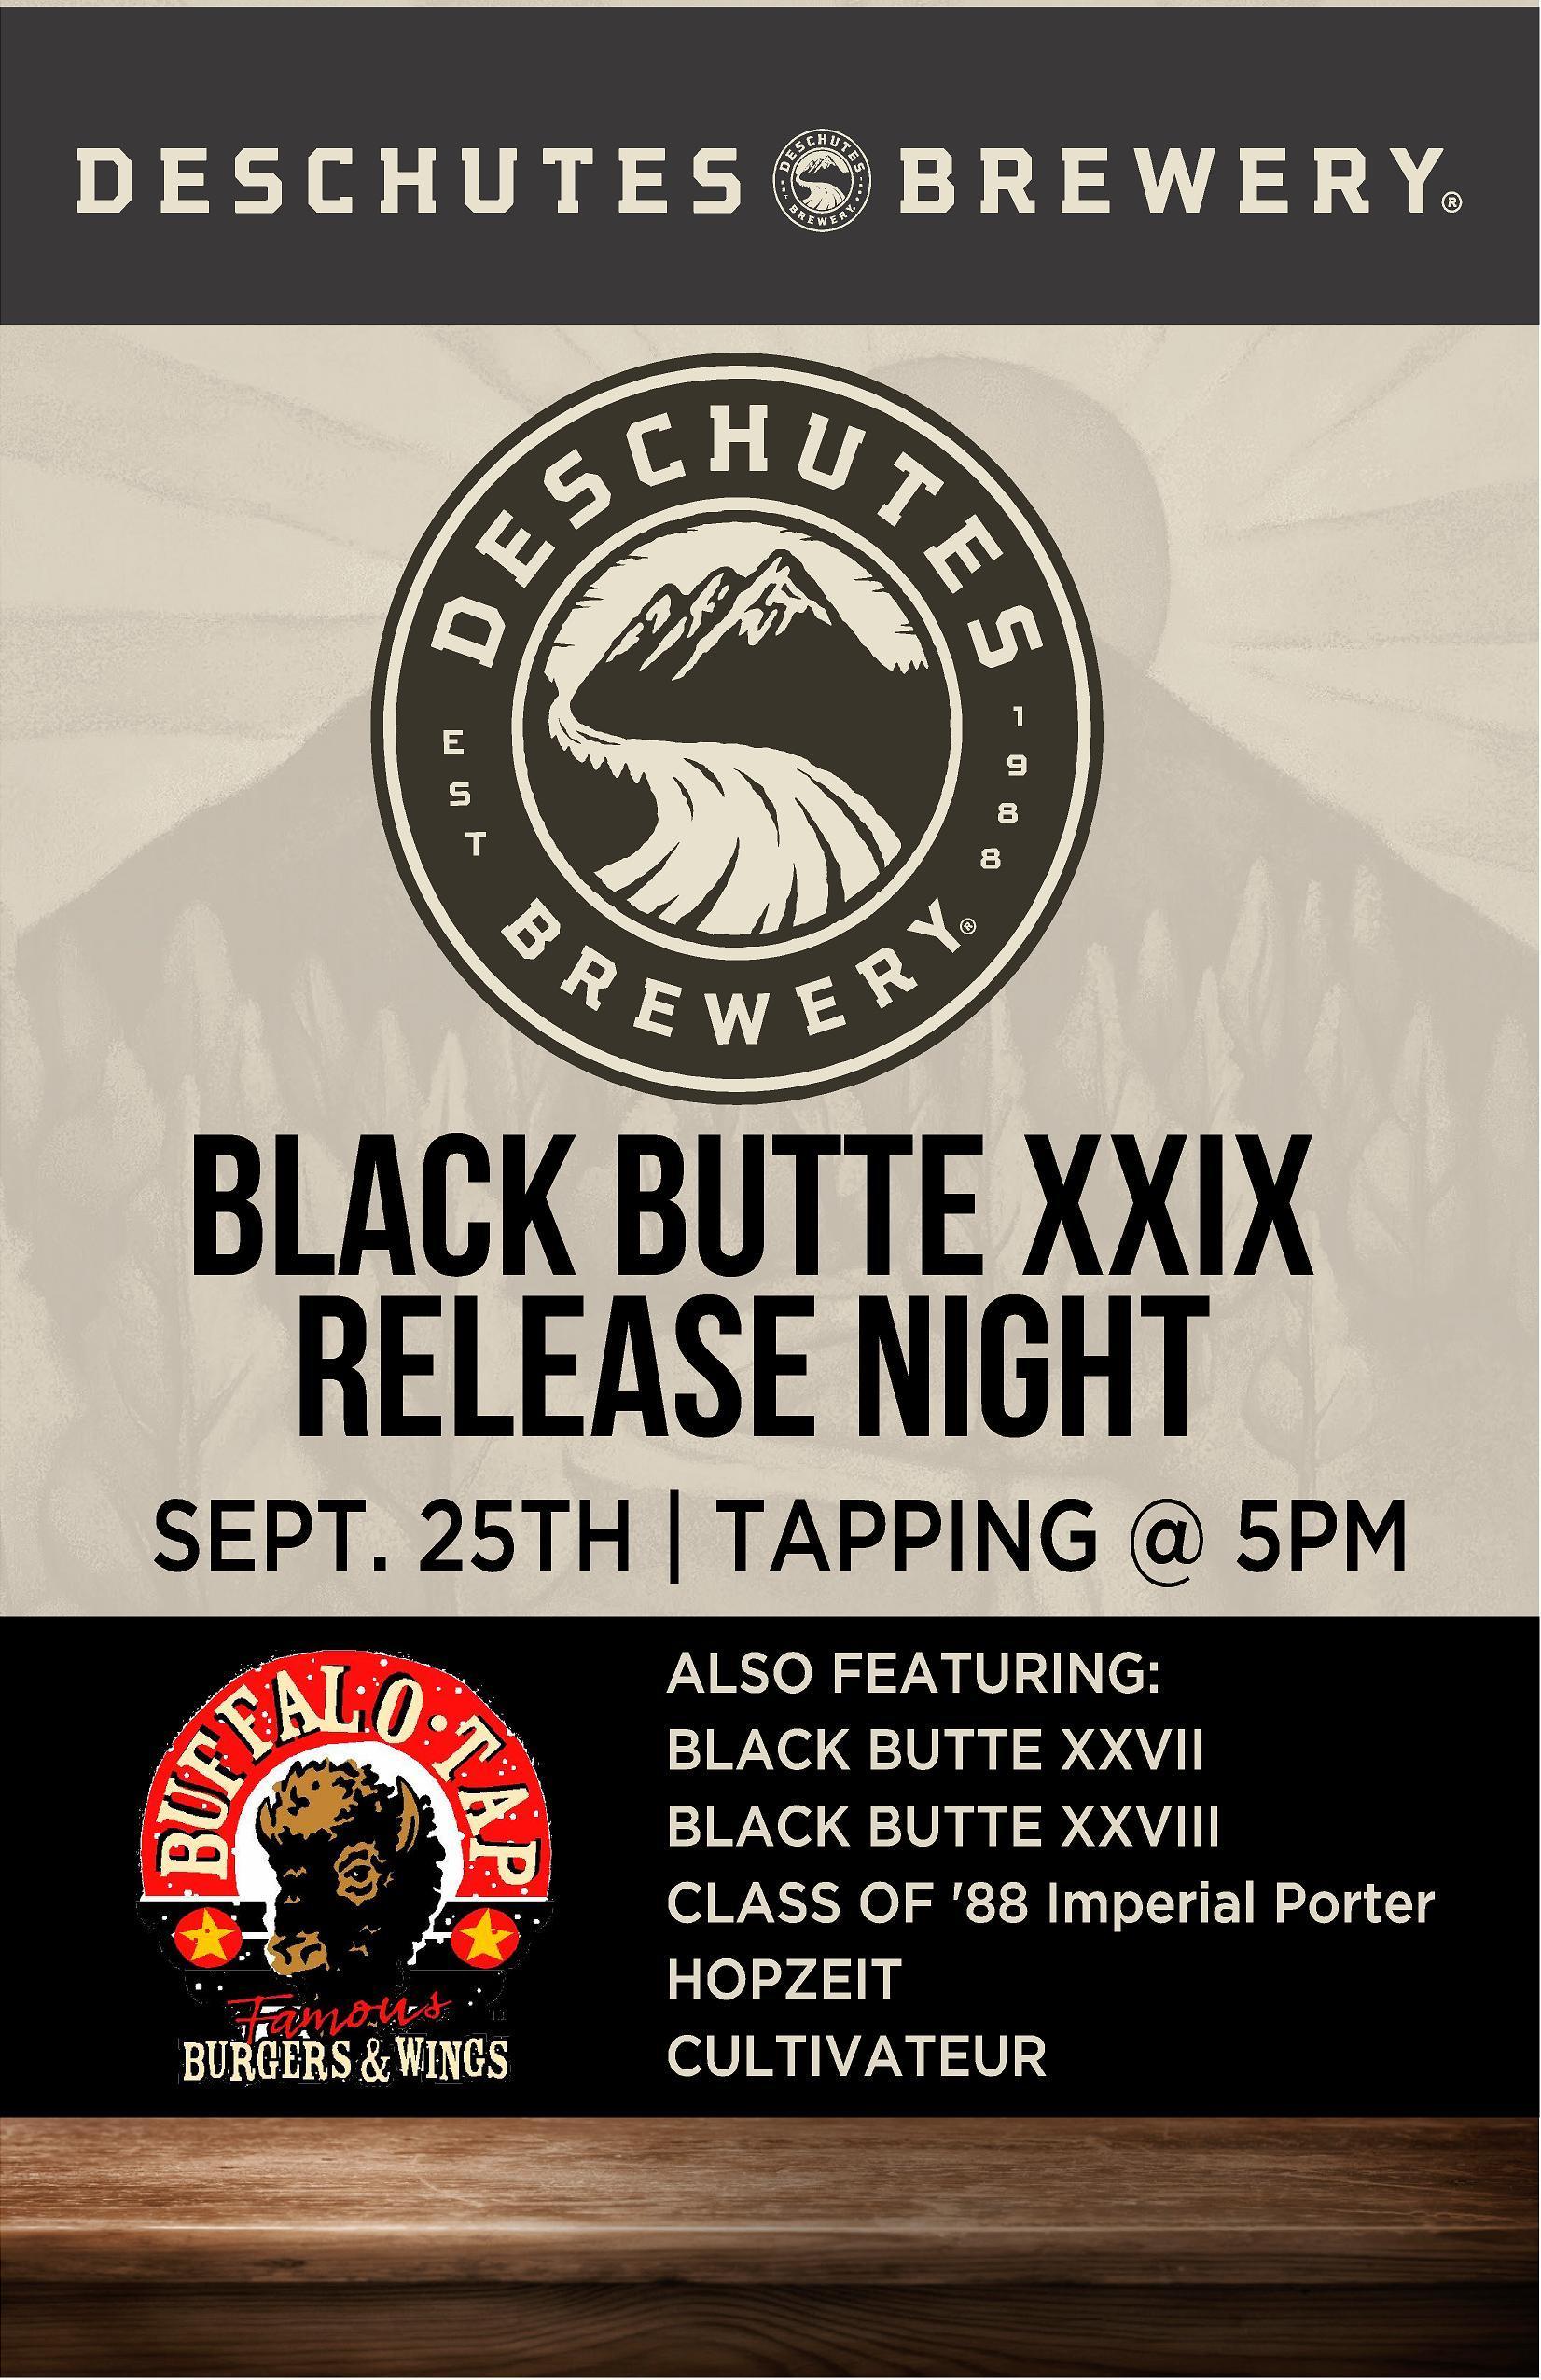 Black Butte Logo - Deschutes Brewery Black Butte XXIX Release at Buffalo